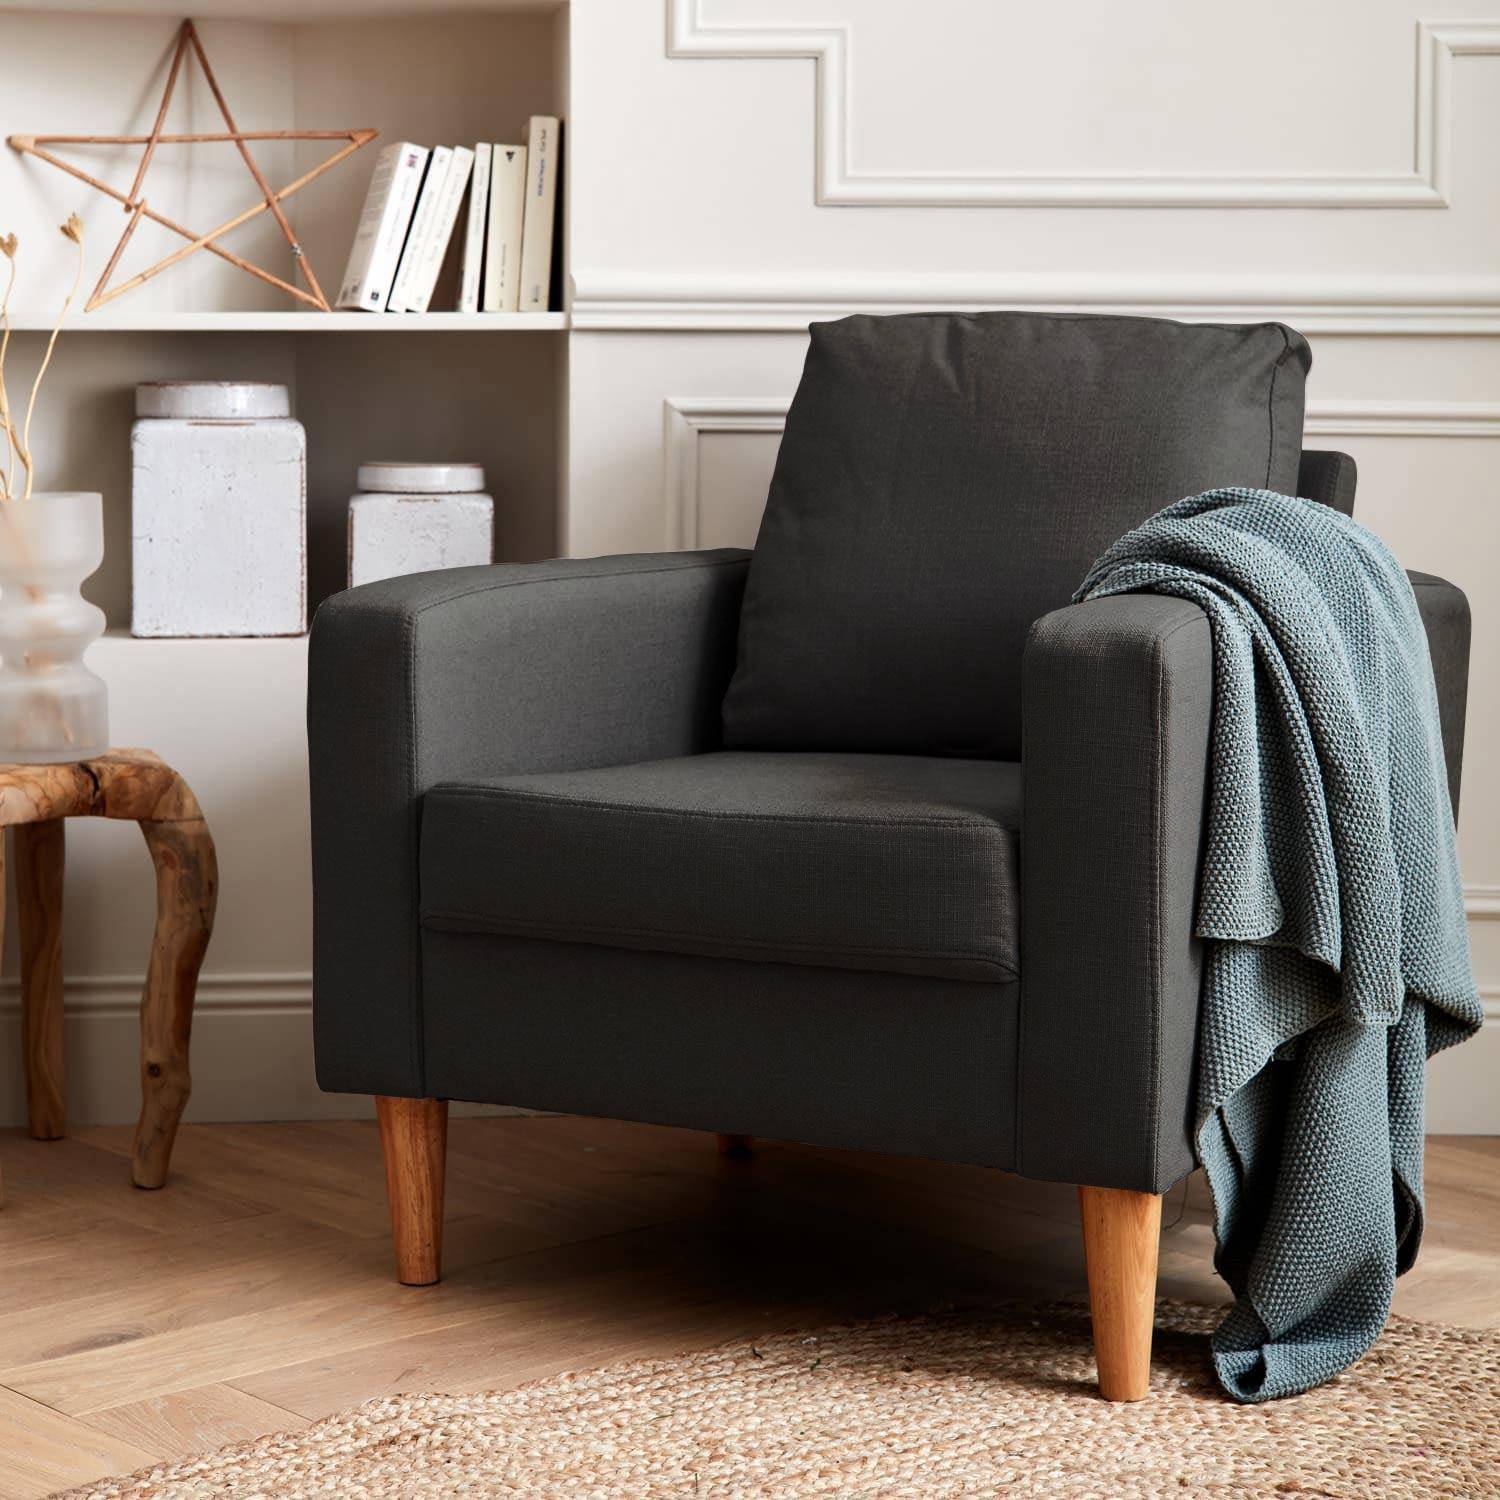 Sillón de tela gris oscuro - Bjorn - Sillón 1 plaza fijo recto patas madera, sillón escandinavo  ,sweeek,Photo1